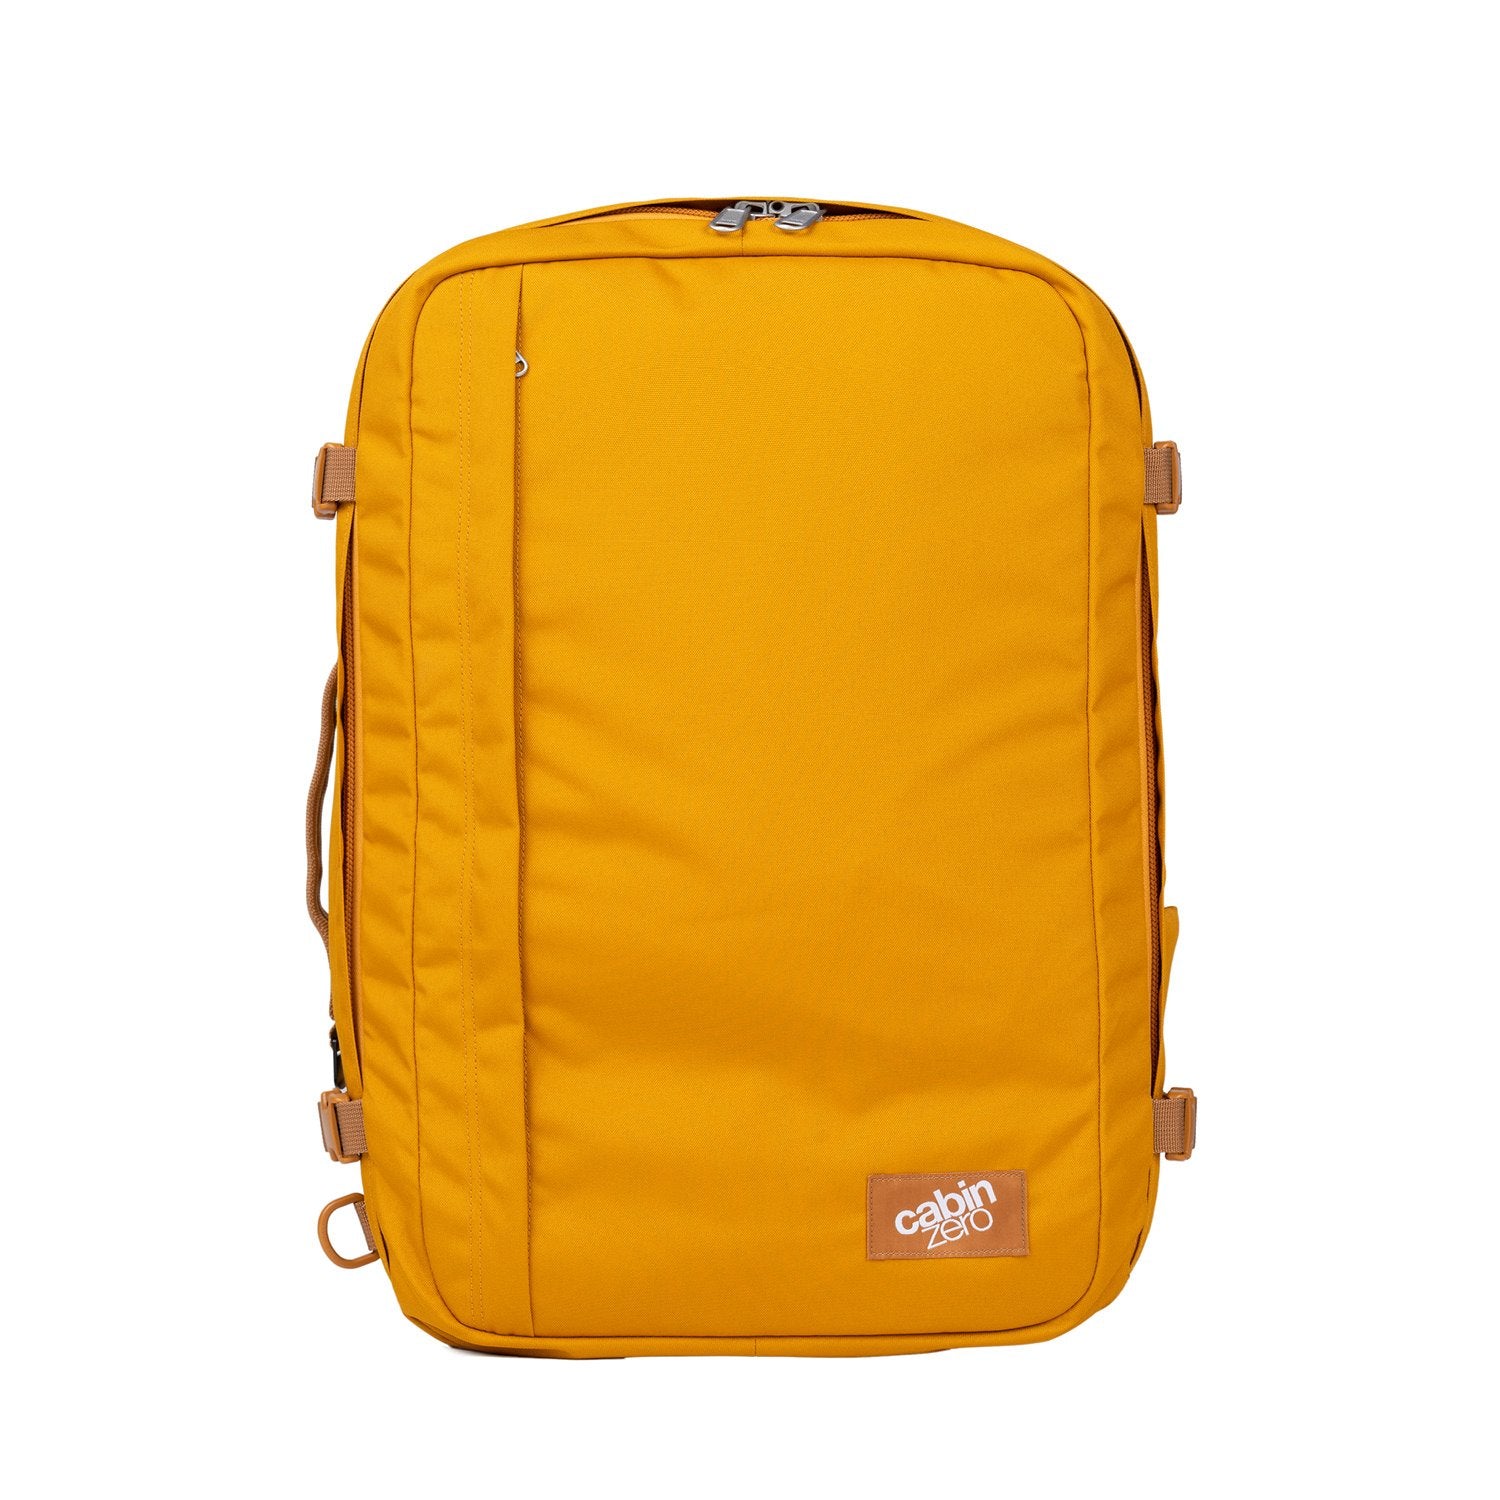 CabinZero Travel bag Classic Cabin Backpack 28 L 15 Inch orange chill